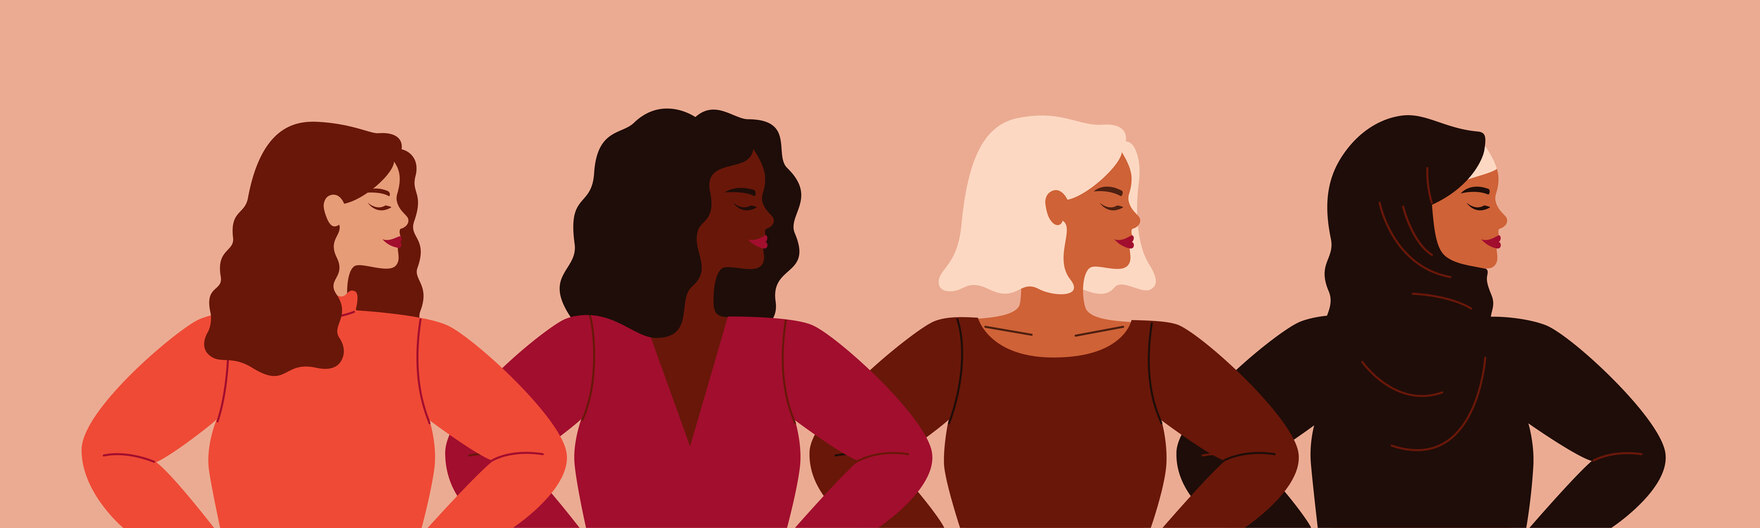 Illustration von vier diversen als Frauen gelesene Personen hüftaufwärts